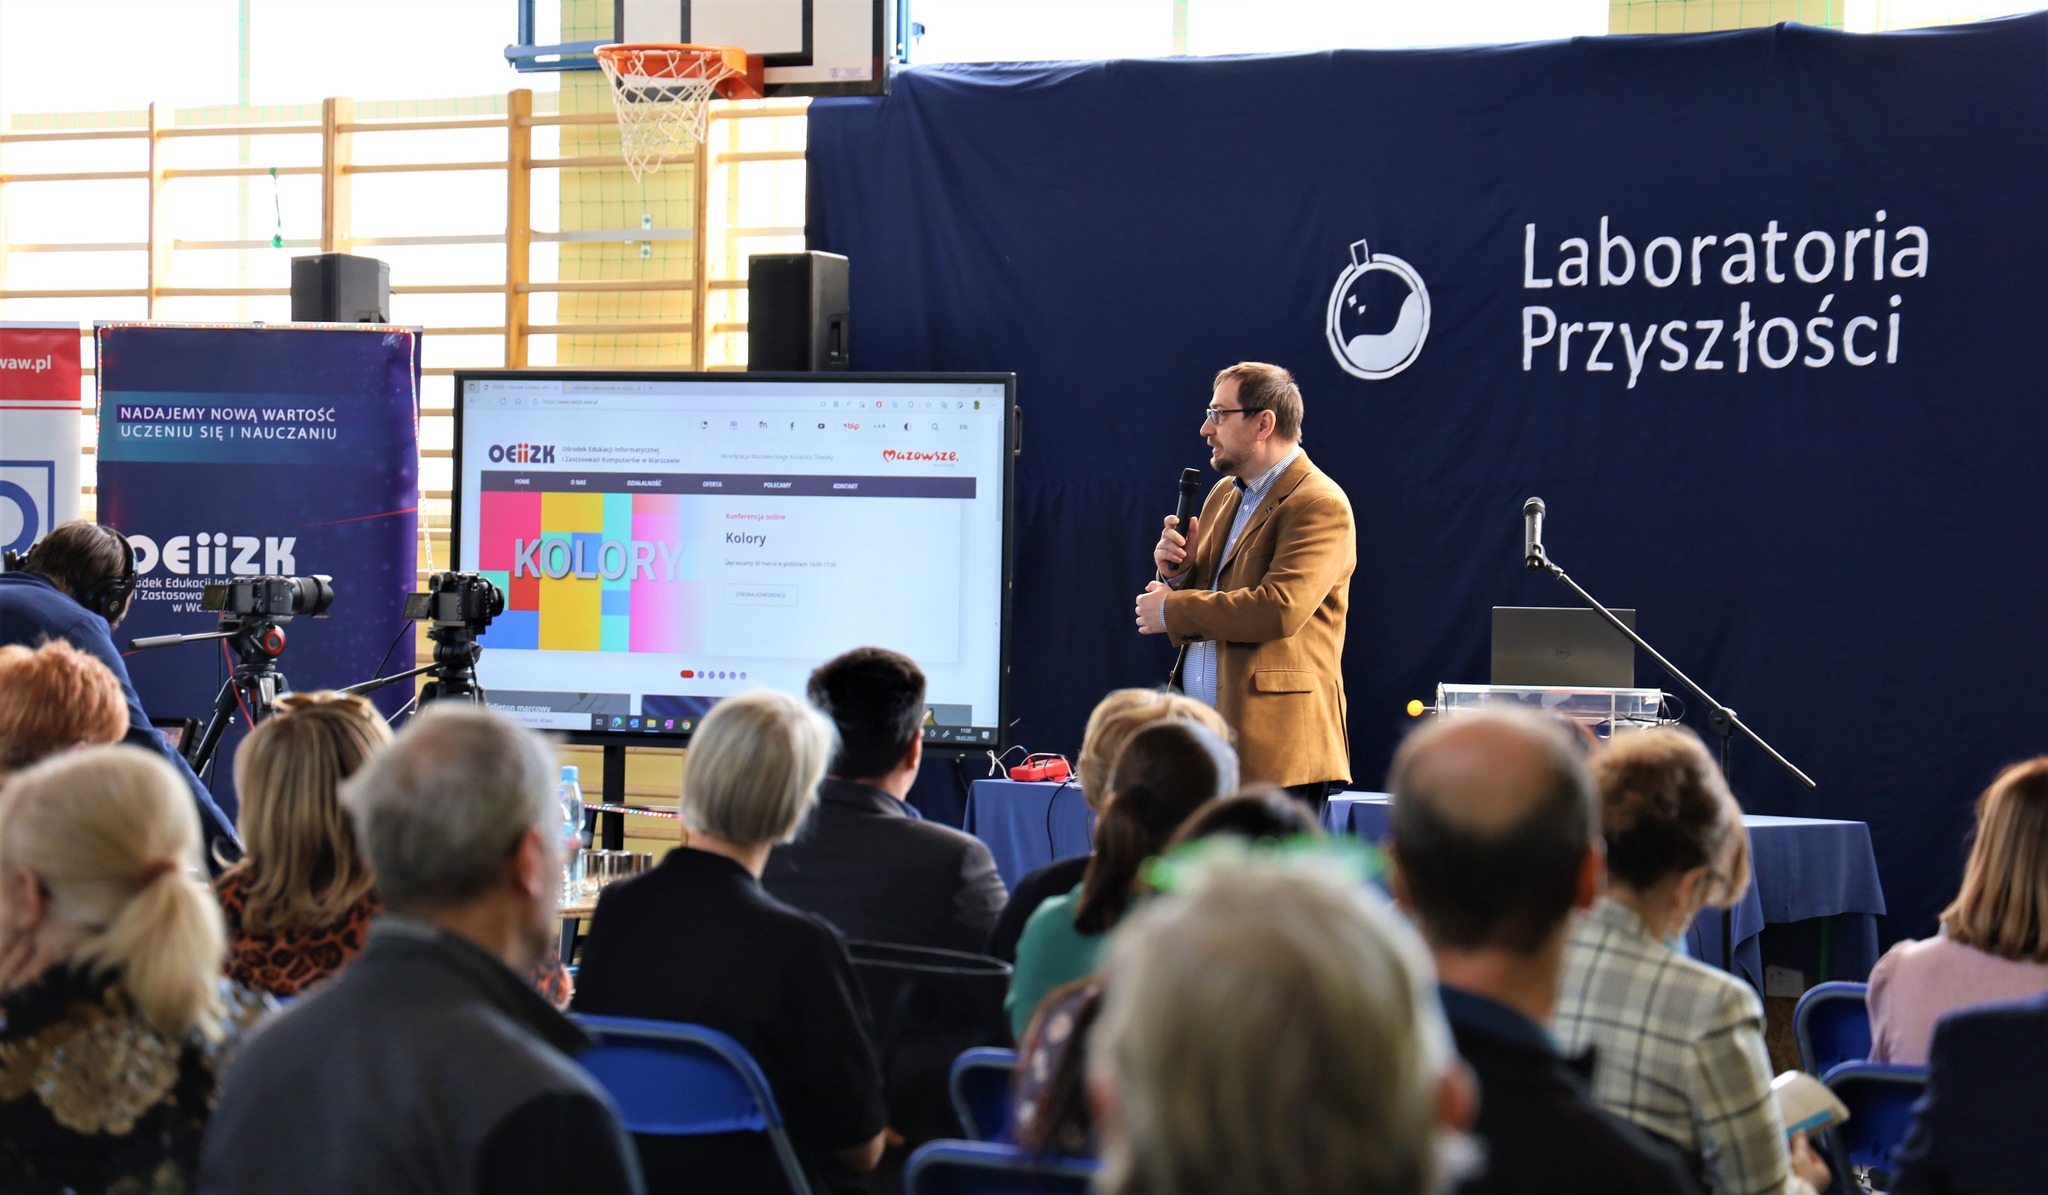 Zdjęcie z konferencji Laboratoria Przyszłości przedstawiające uczestników i prowadzącego.